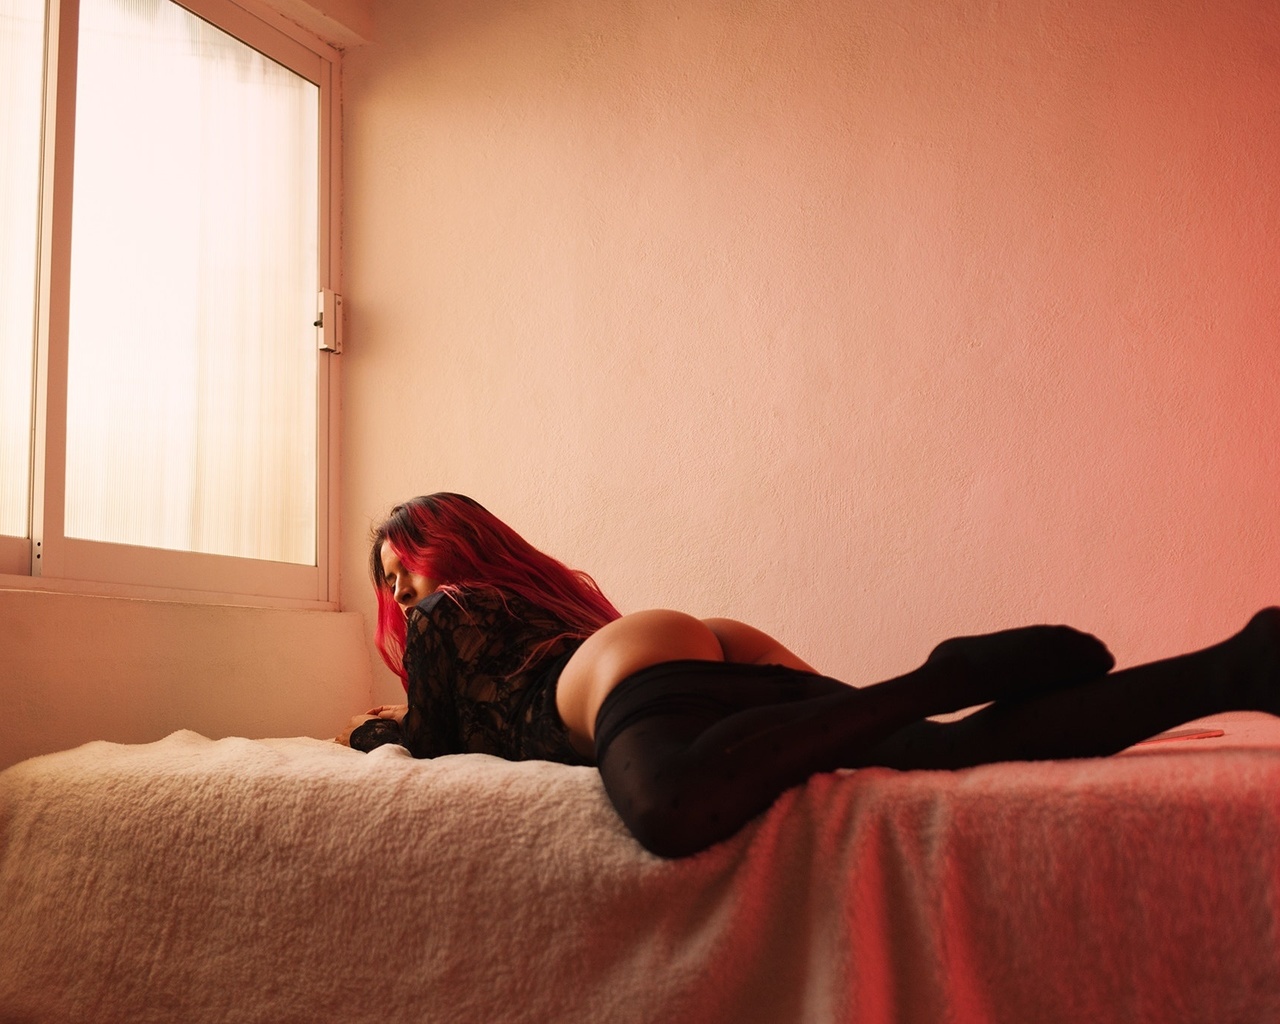 Рыжая девушка с большими сиськами раздвигает ноги для порки с волосатым брюнетом